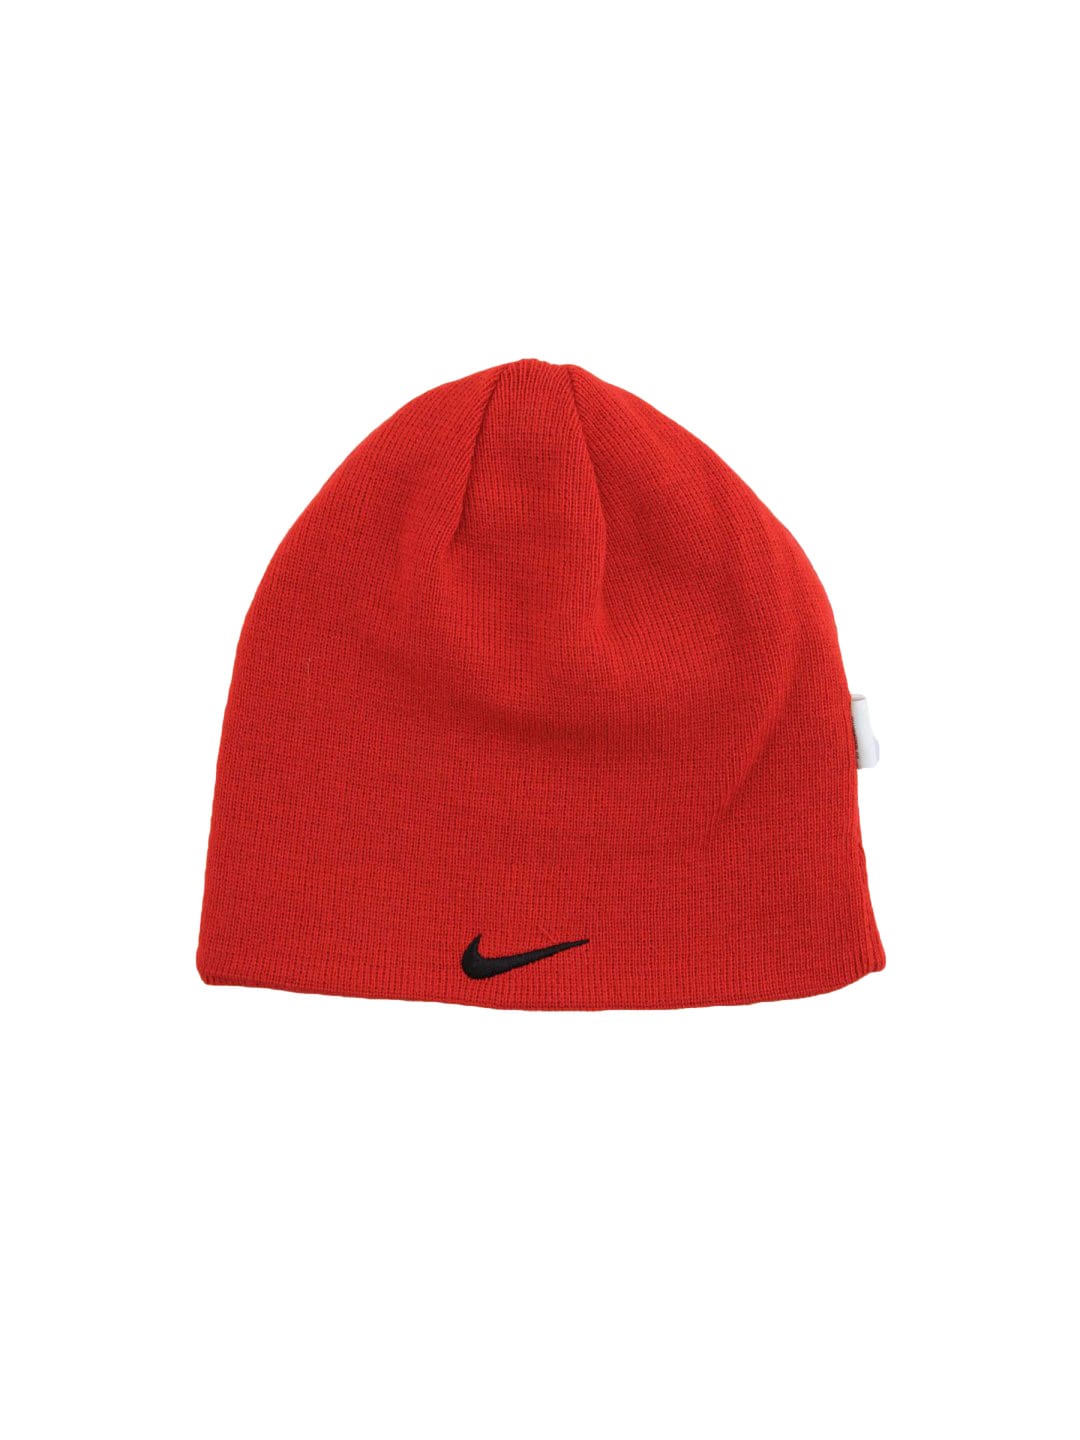 Nike Unisex Knit Beanie Red Skull Cap